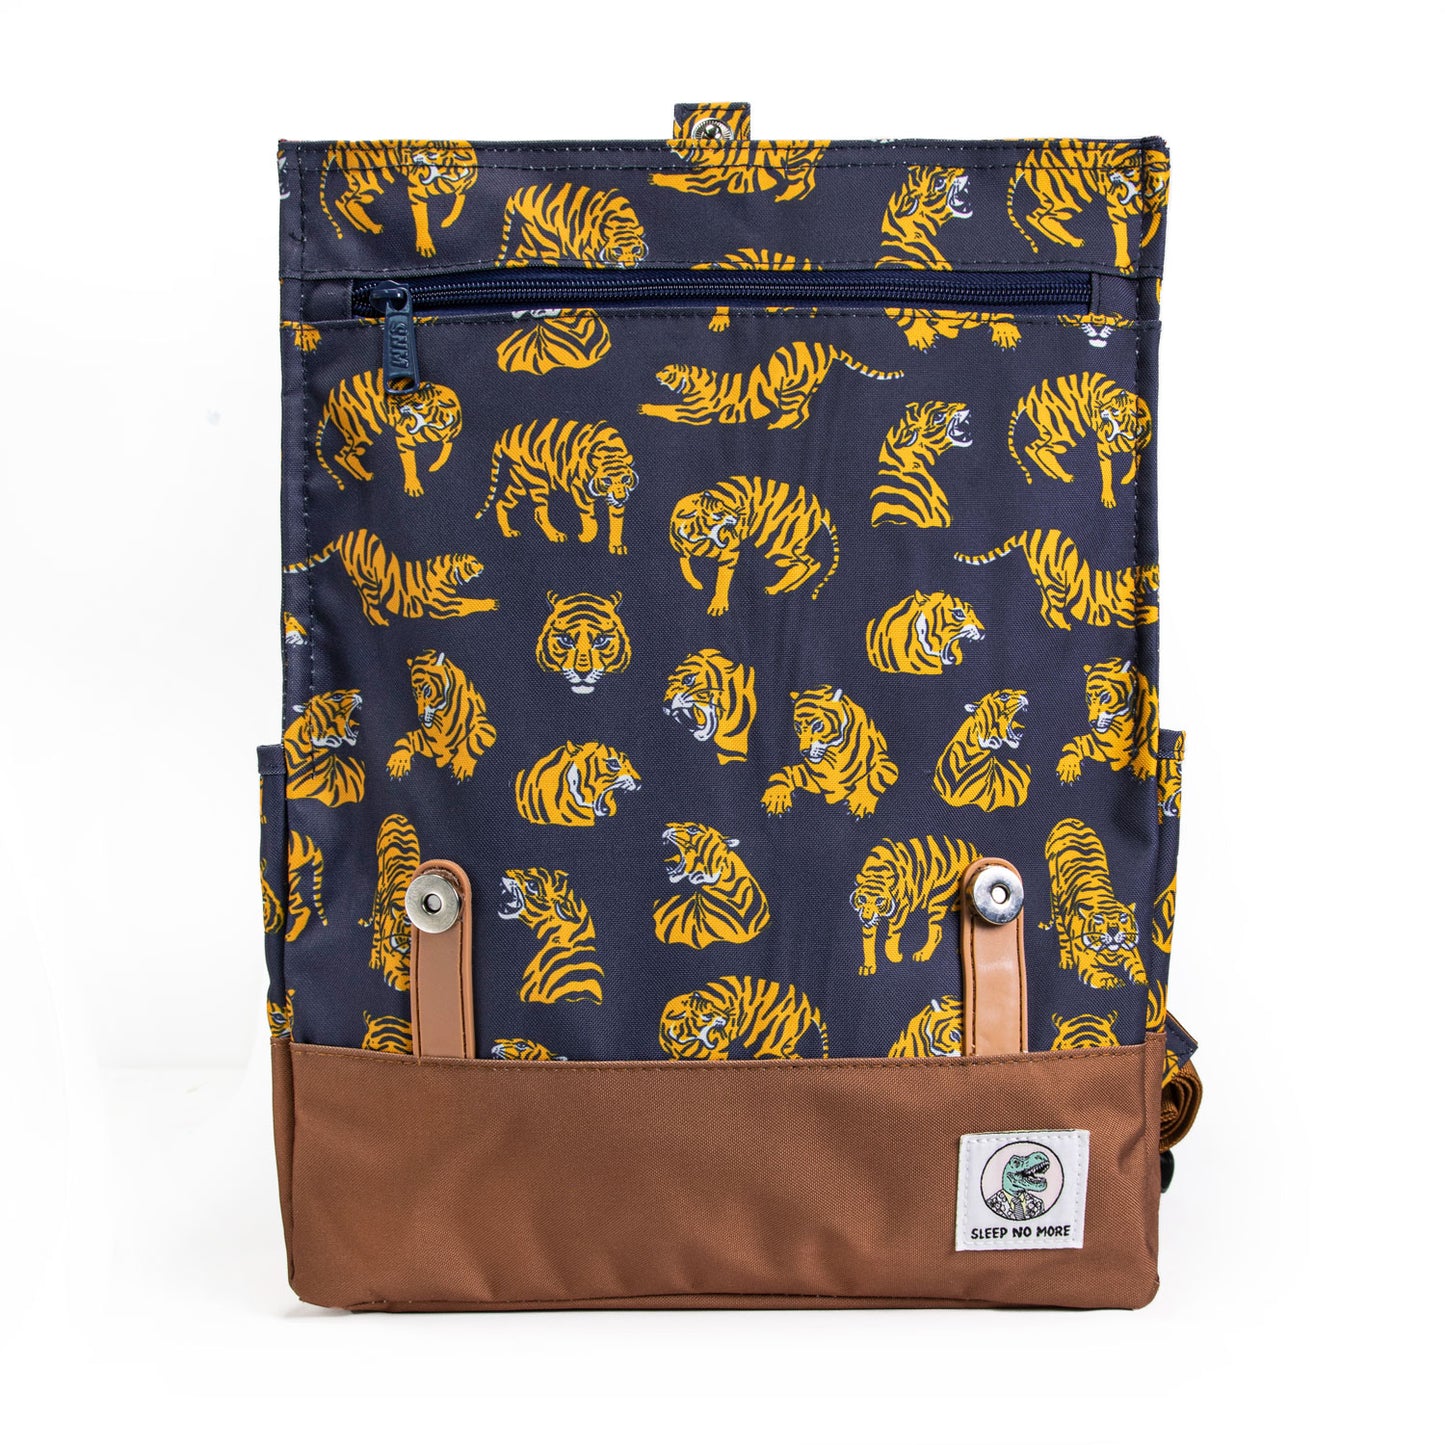 Vintage Backpack ✦ Old School Tiger Navy Blue